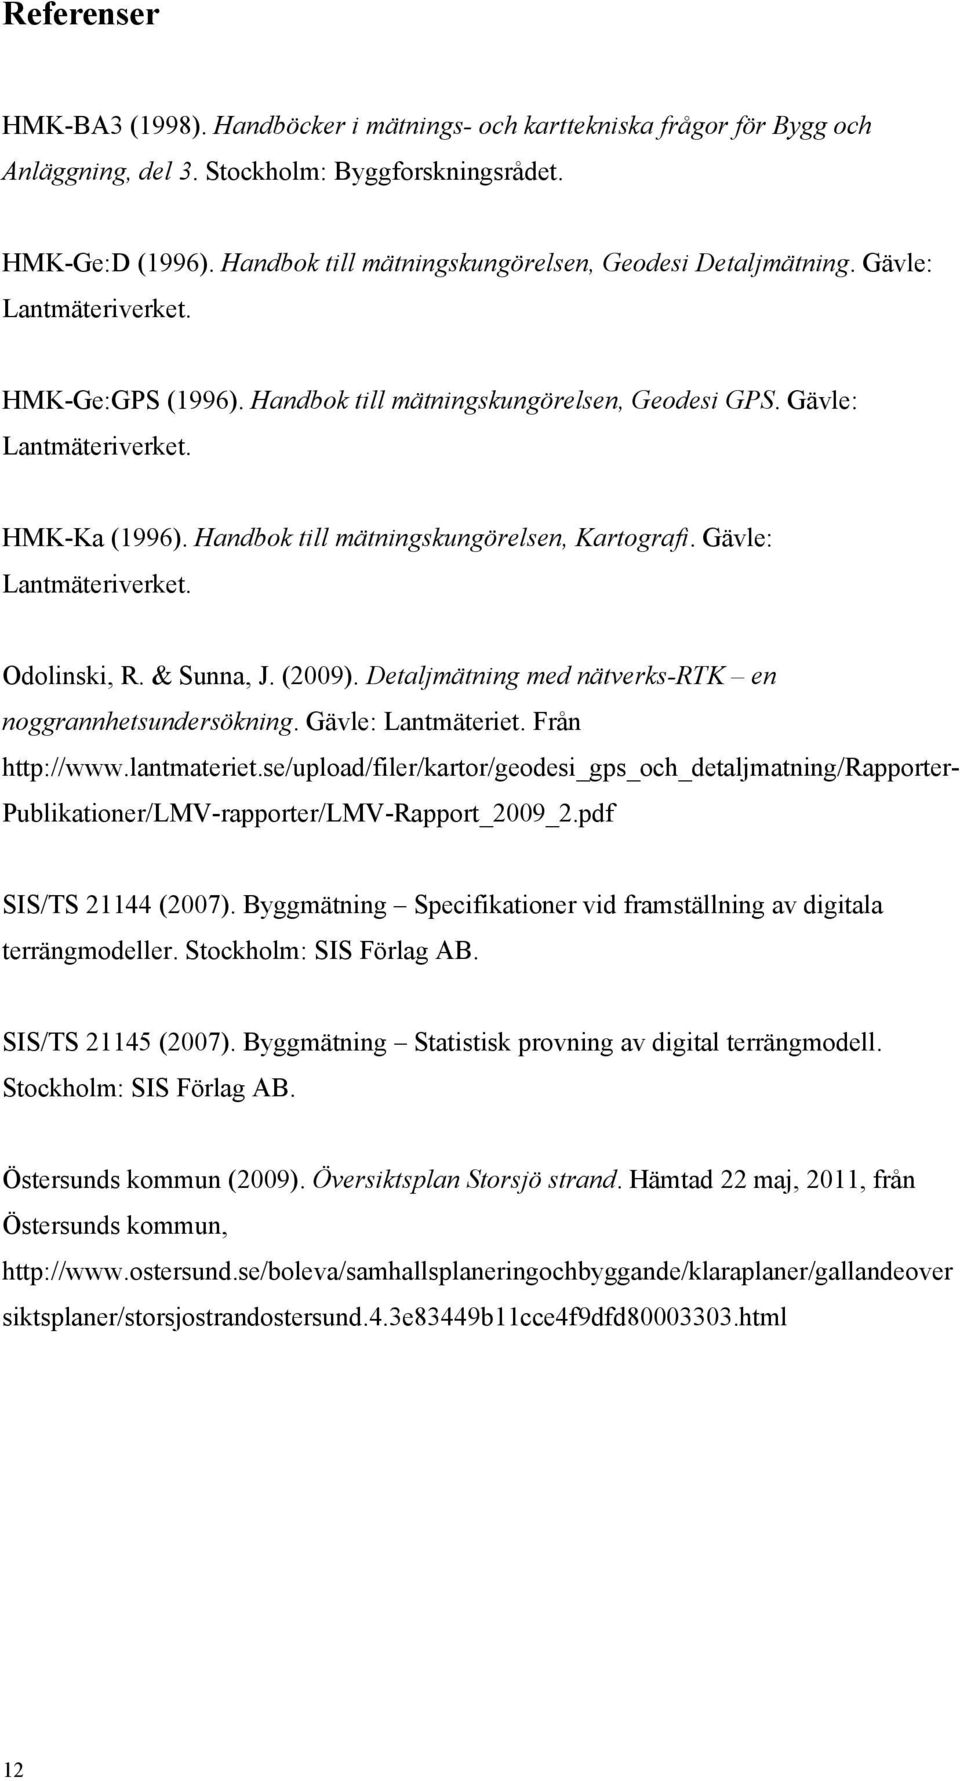 Handbok till mätningskungörelsen, Kartografi. Gävle: Lantmäteriverket. Odolinski, R. & Sunna, J. (2009). Detaljmätning med nätverks-rtk en noggrannhetsundersökning. Gävle: Lantmäteriet.